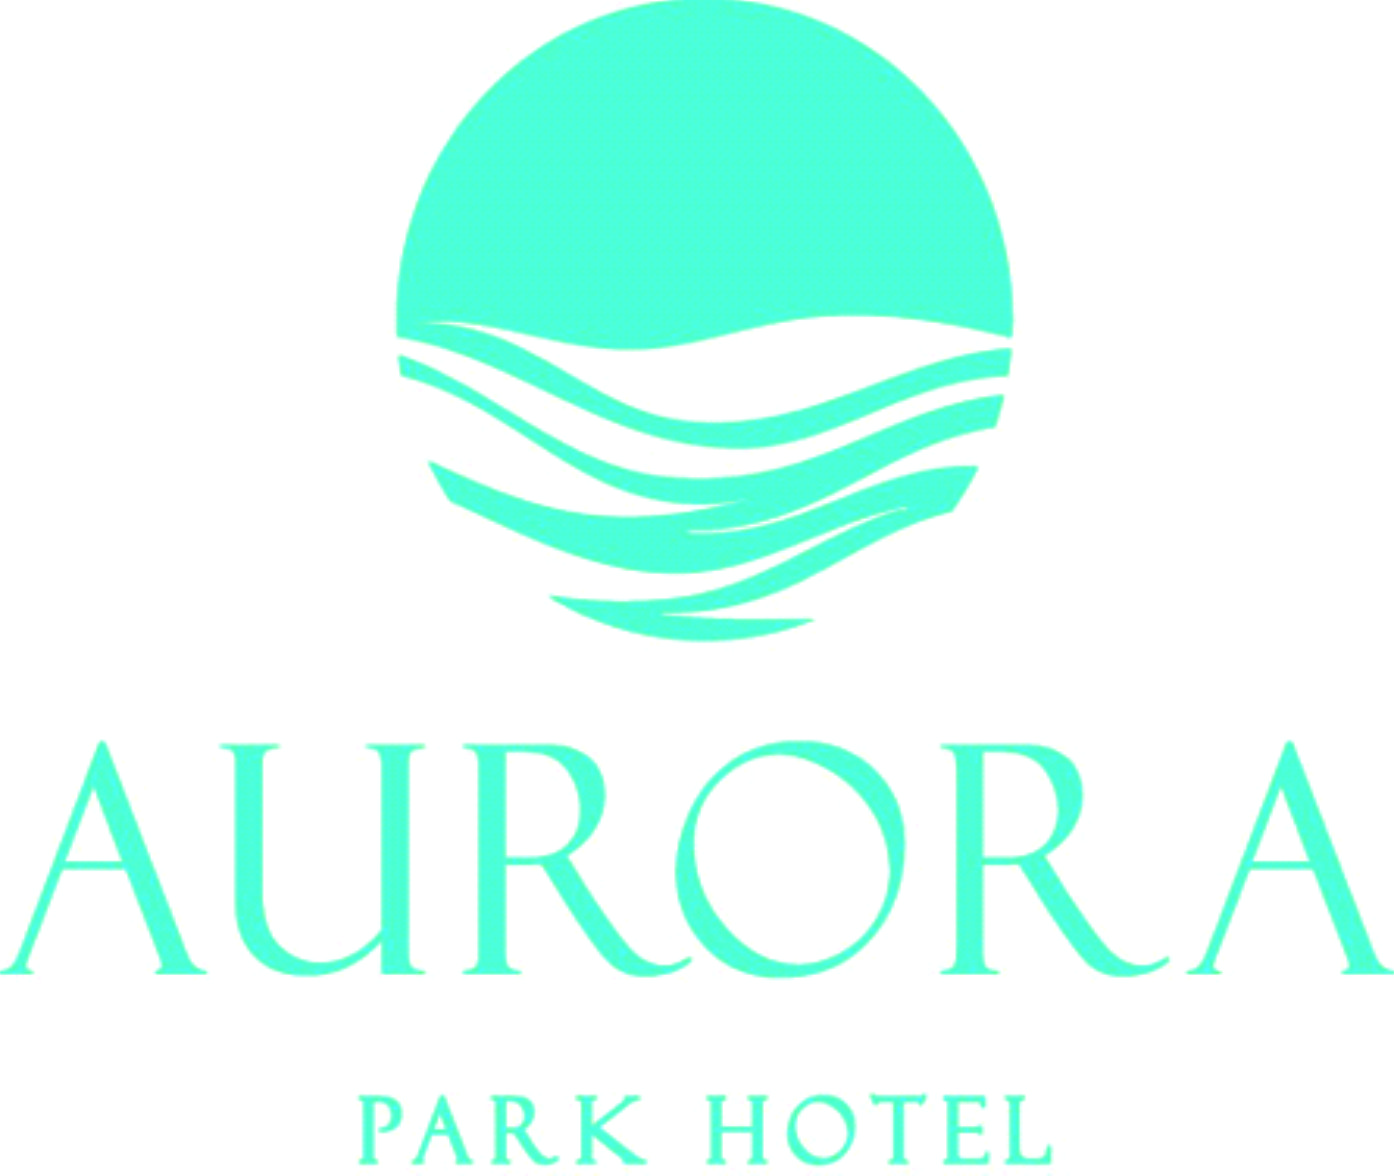 AURORA PARK HOTEL